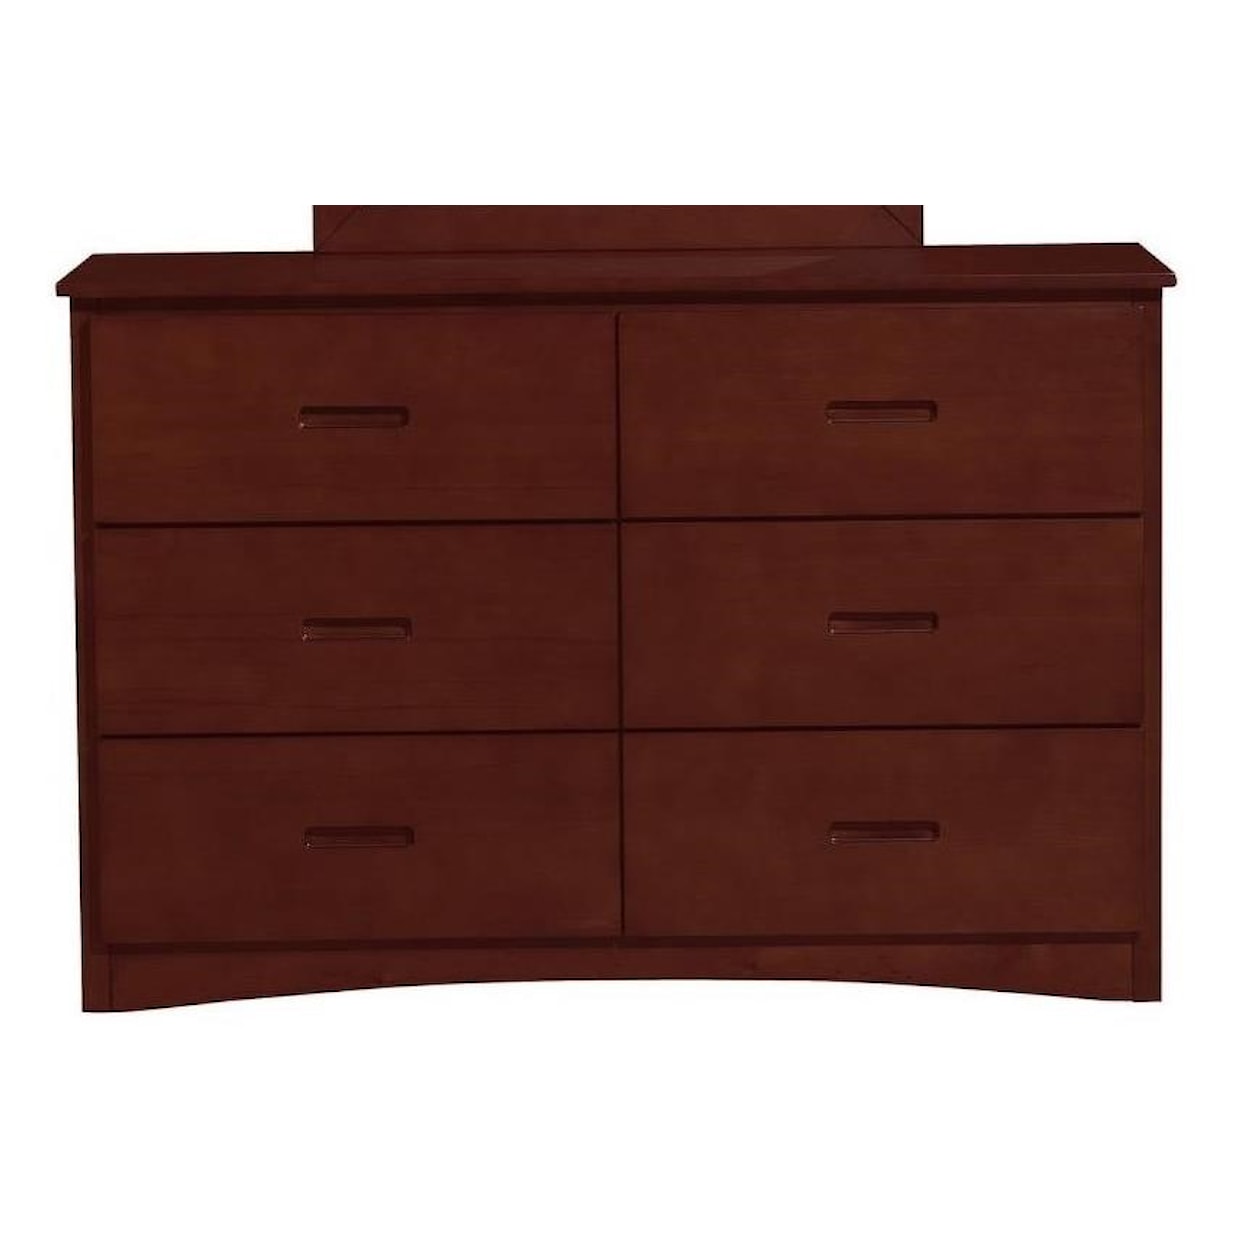 Homelegance Furniture Discovery Dresser